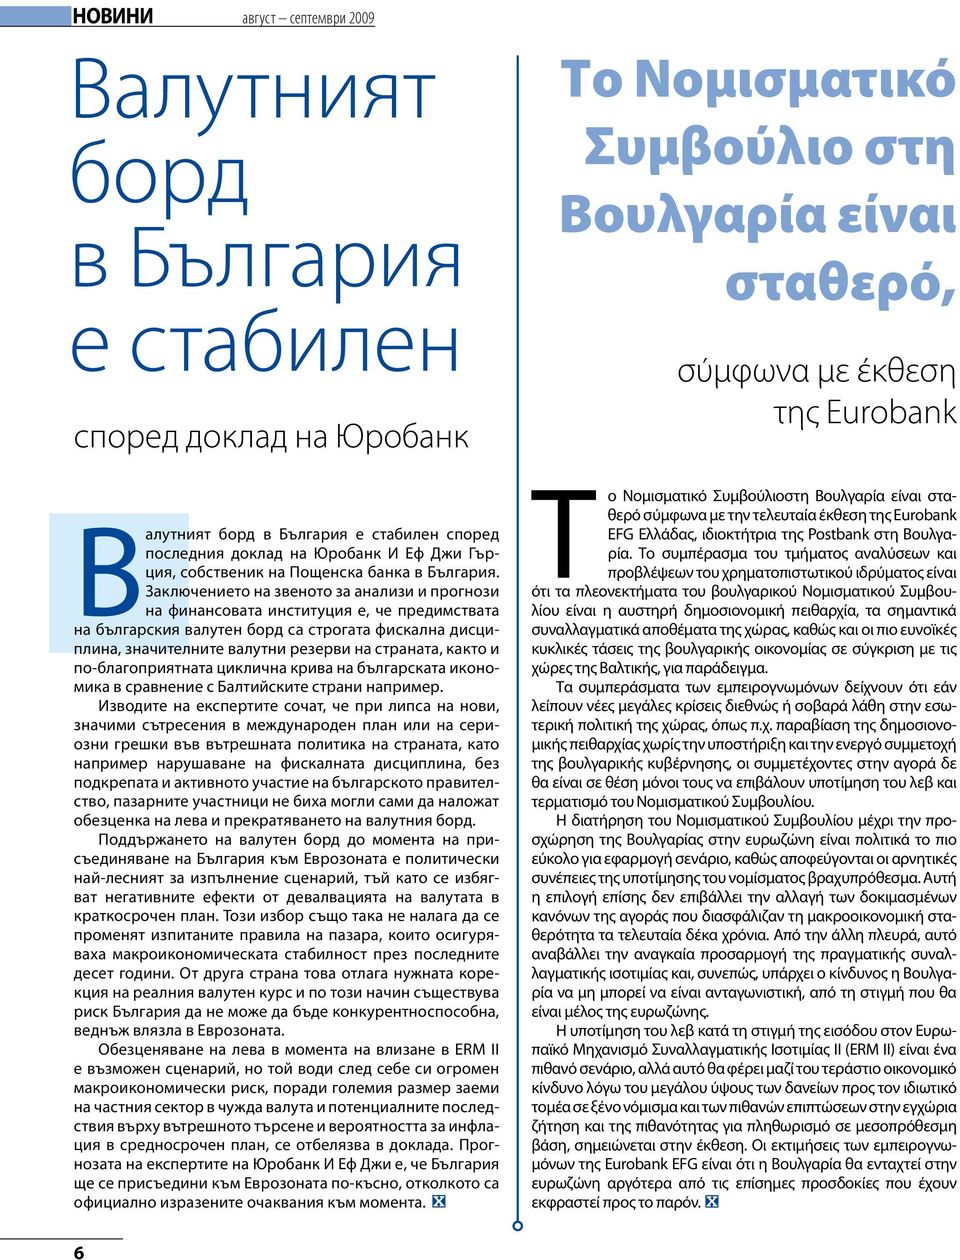 Заключението на звеното за анализи и прогнози на финансовата институция е, че предимствата на българския валутен борд са строгата фискална дисциплина, значителните валутни резерви на страната, както